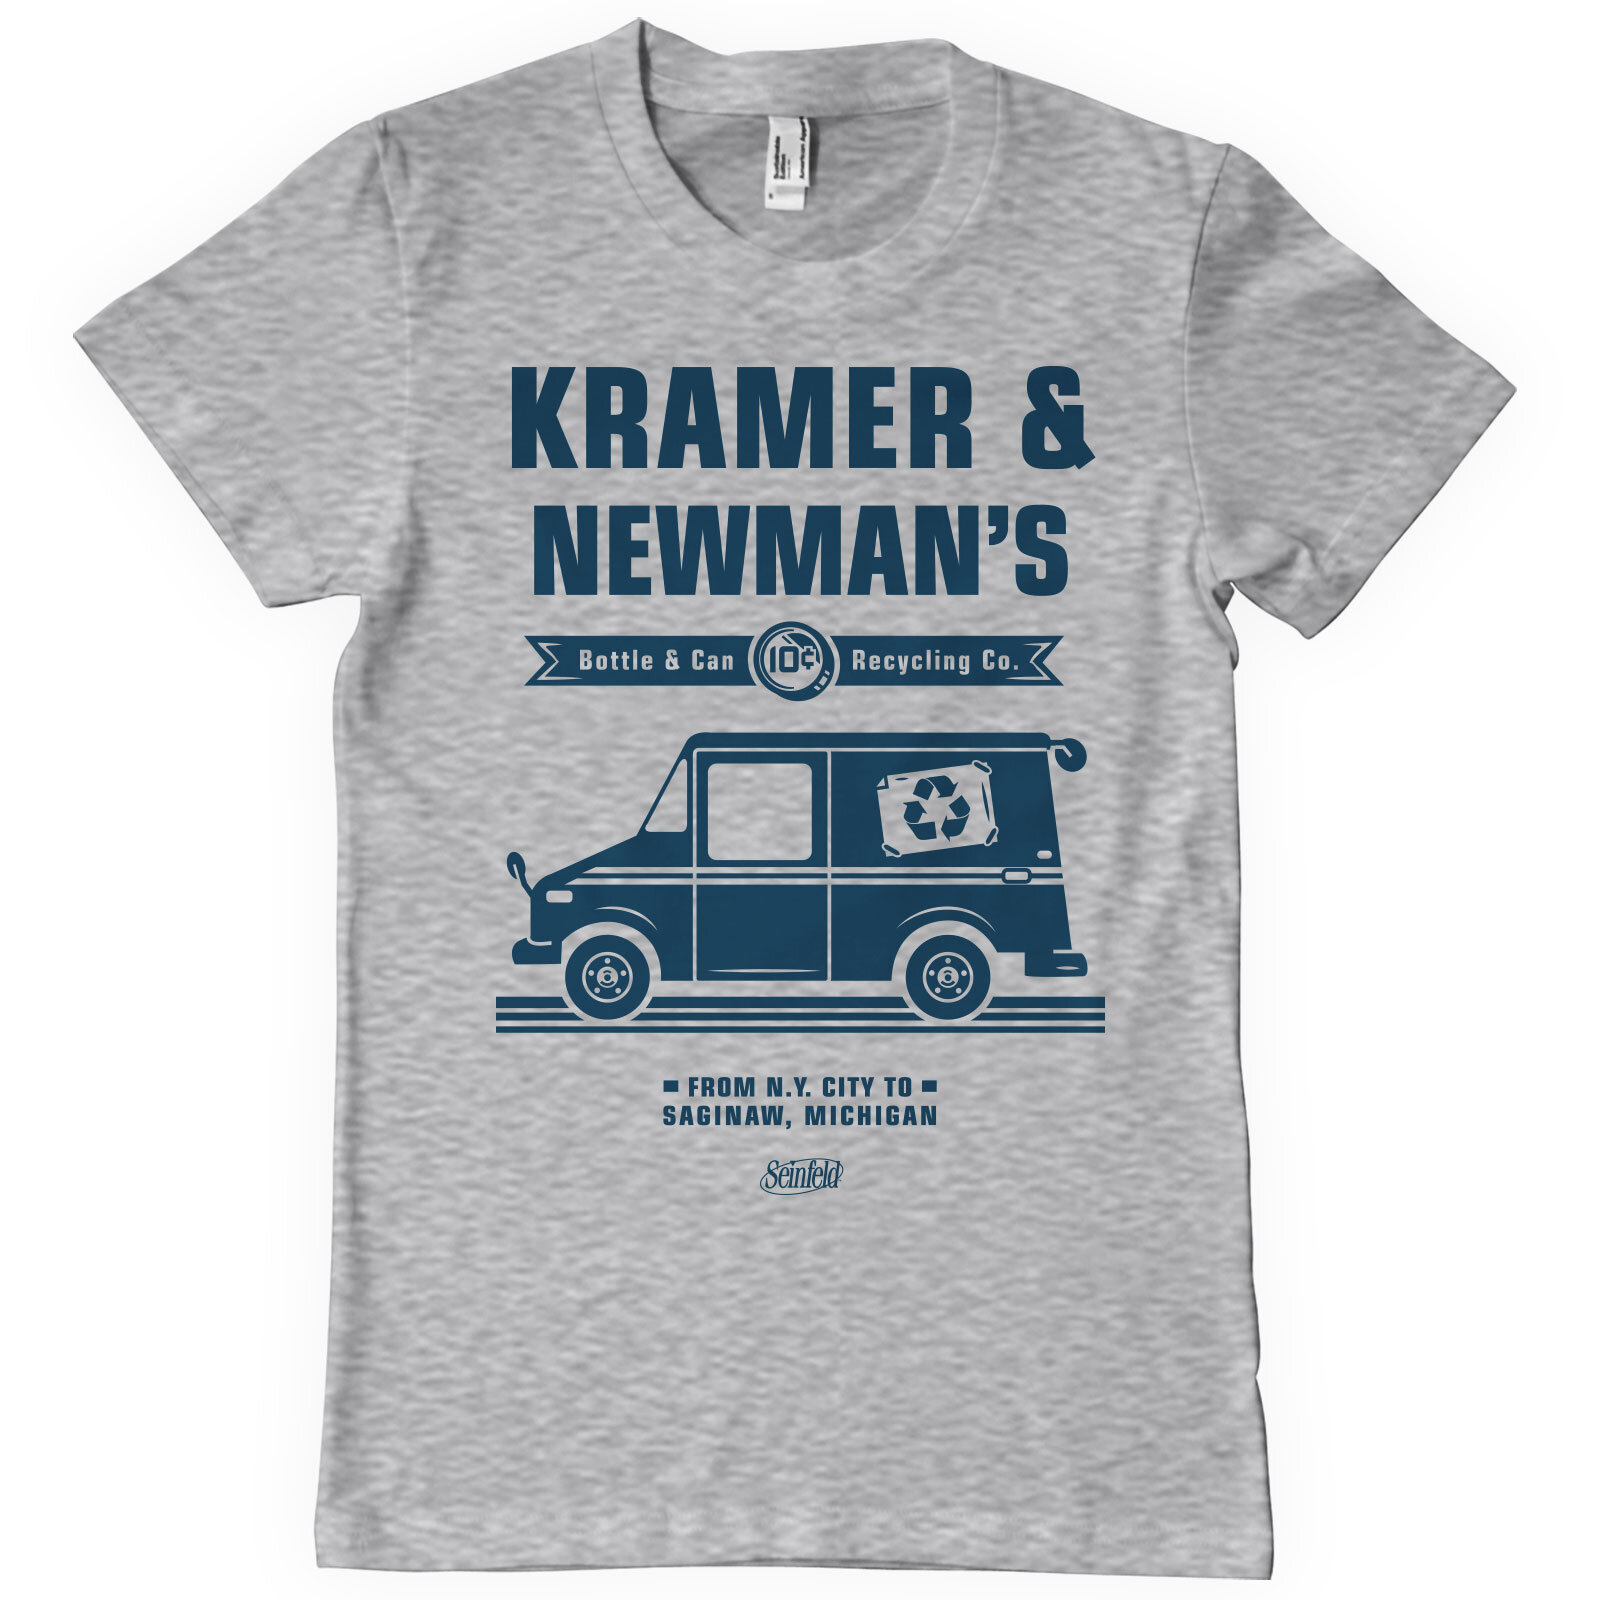 Kramer & Newman's Recycling Co T-Shirt